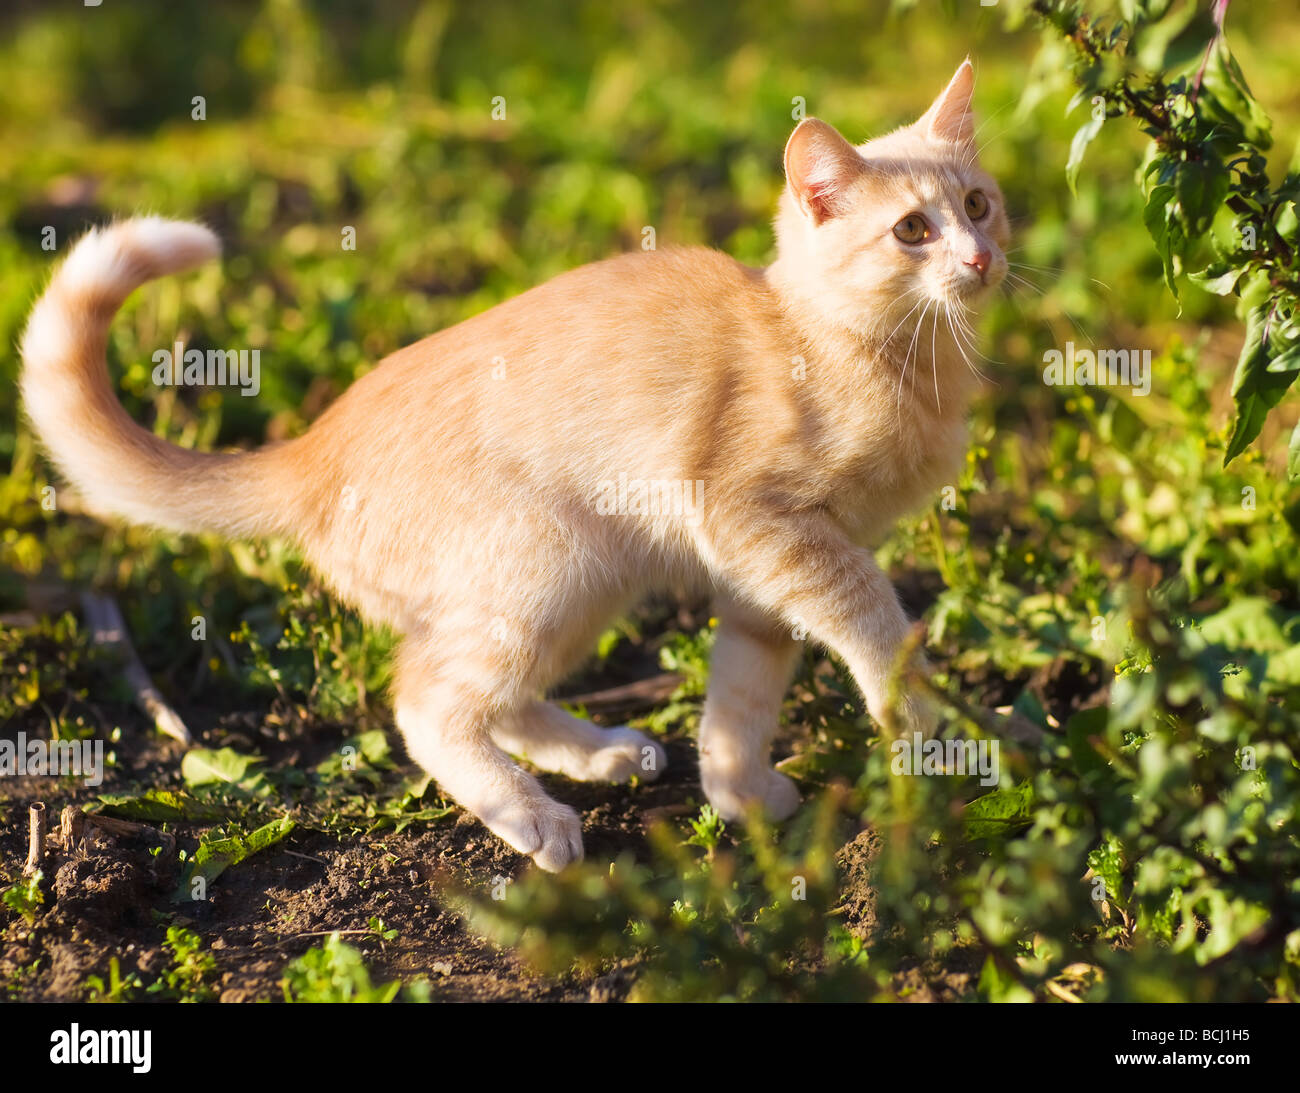 Playful kitten on a green grass Stock Photo